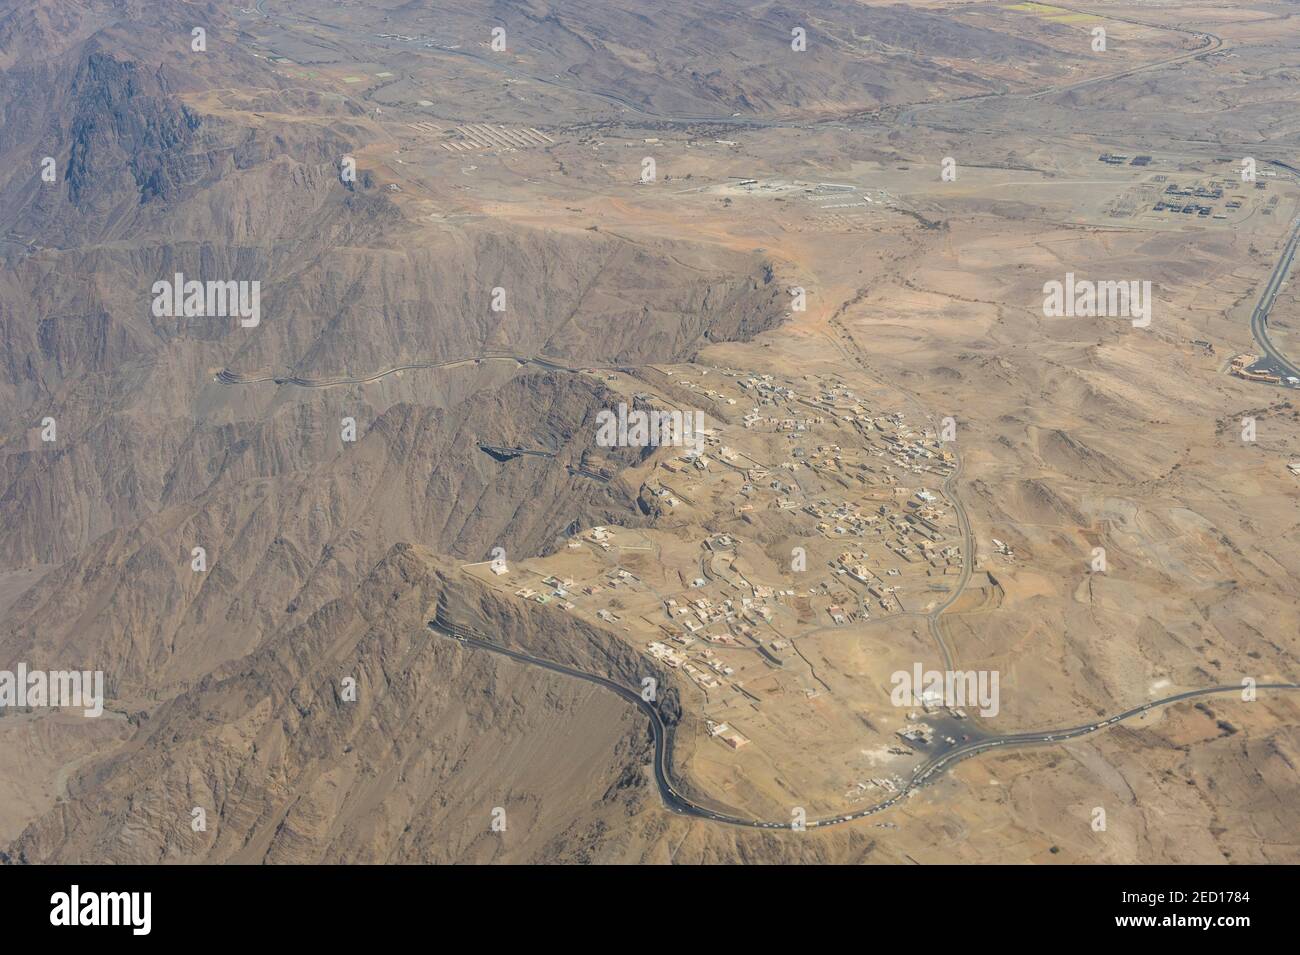 Aereo della regione montagnosa intorno ad Abha, Arabia Saudita Foto Stock